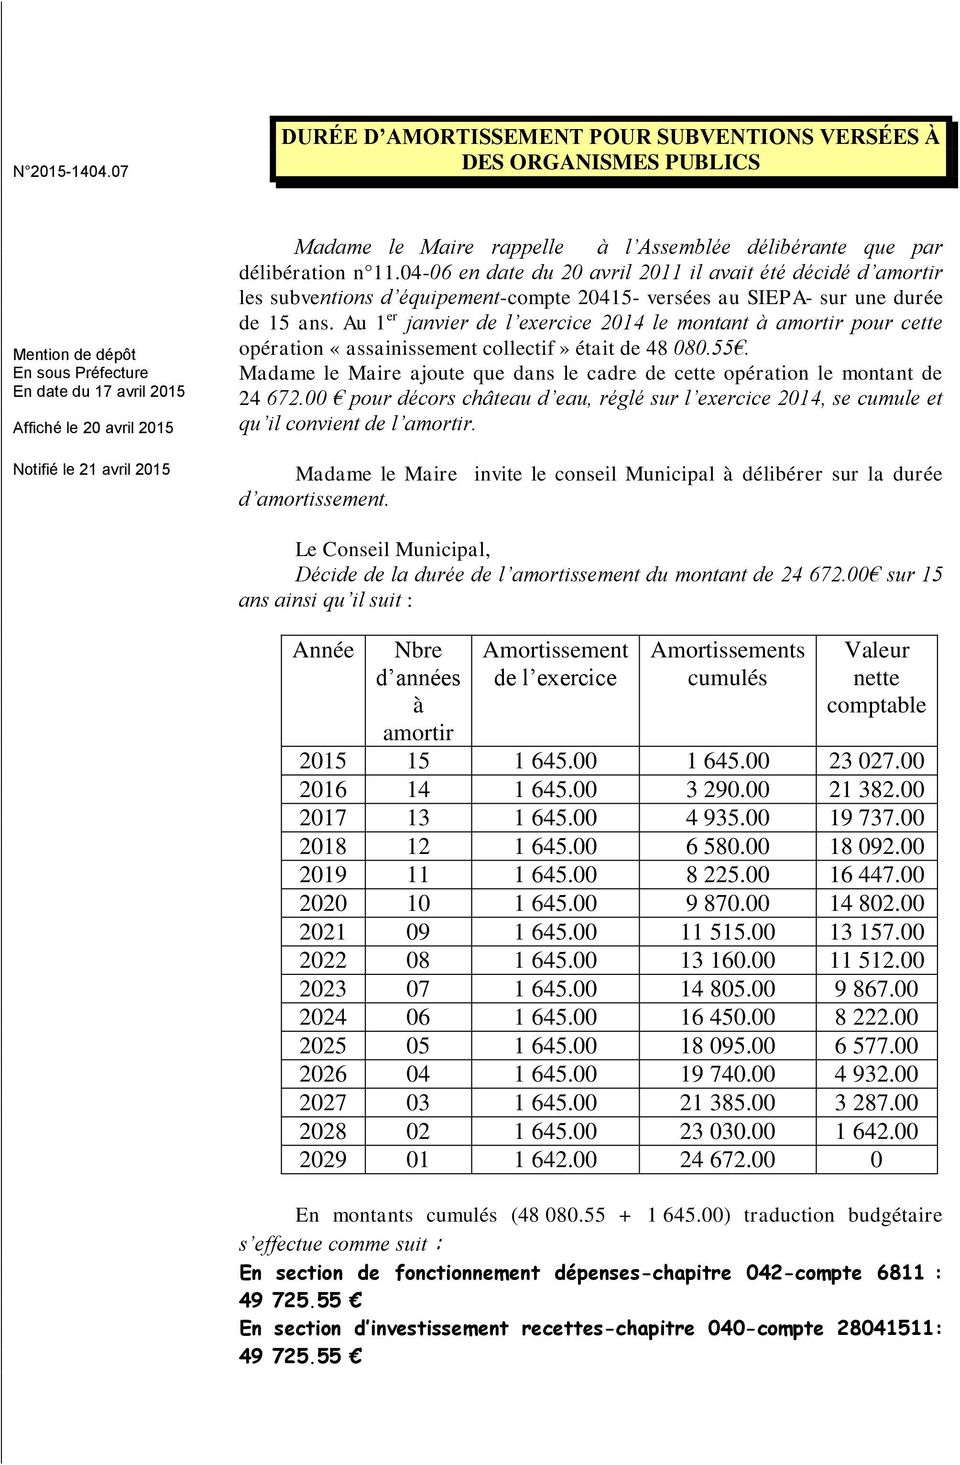 Au 1 er janvier de l exercice 2014 le montant à amortir pour cette opération «assainissement collectif» était de 48 080.55.